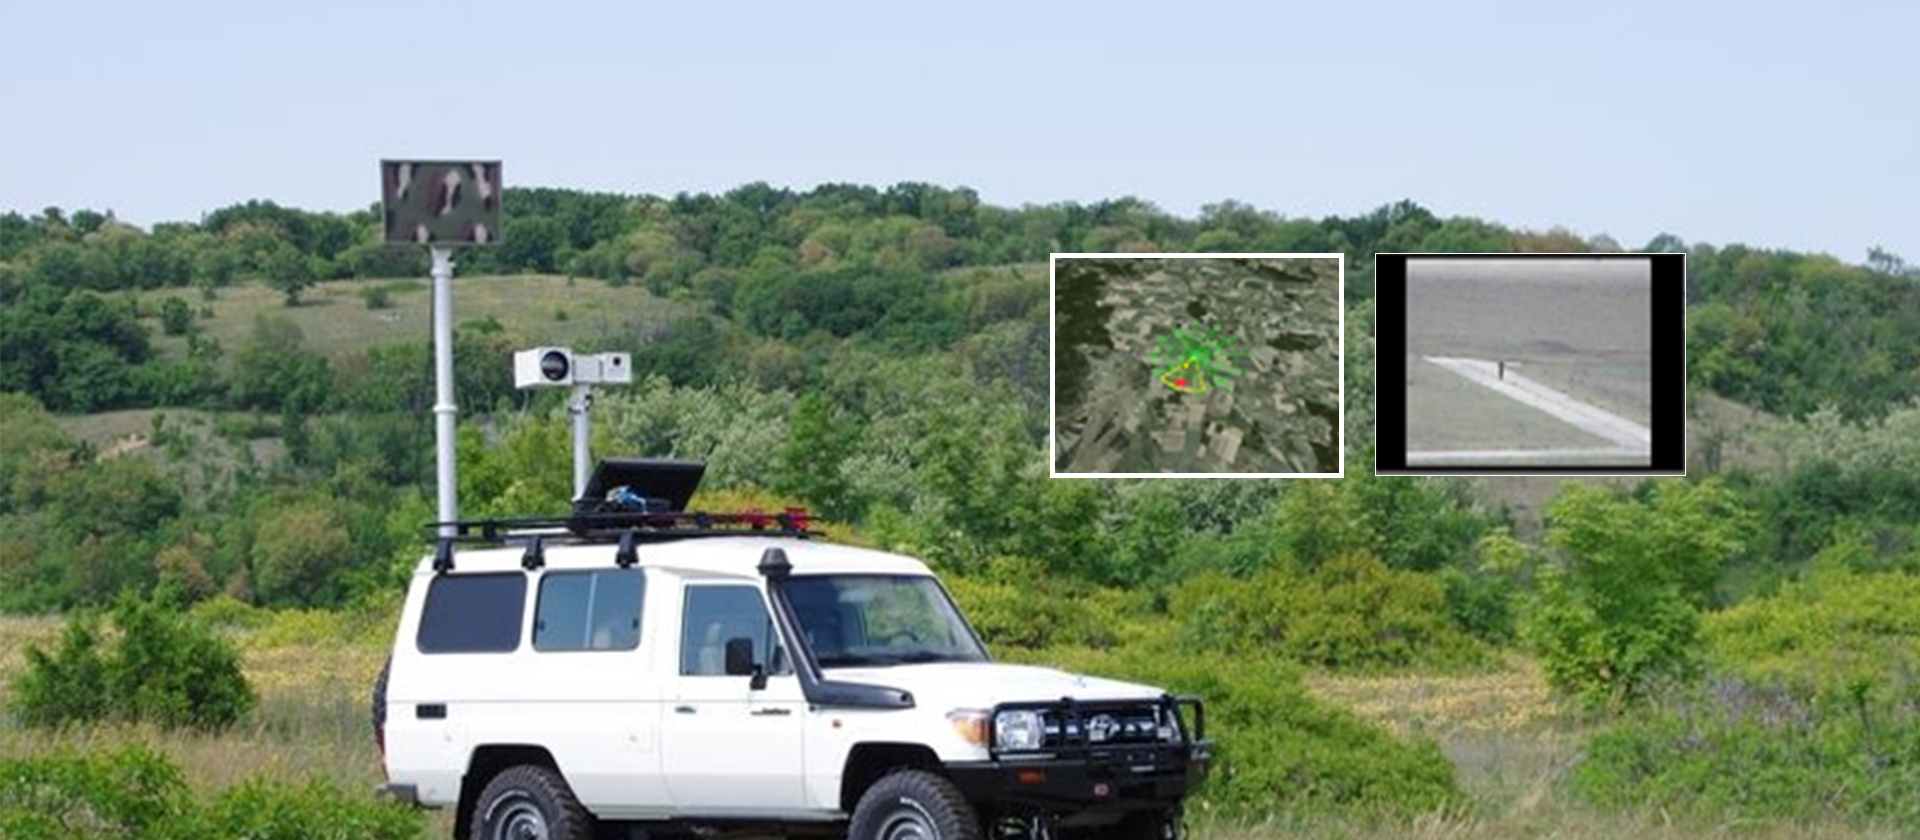 Portable Ground Surveillance Radar 